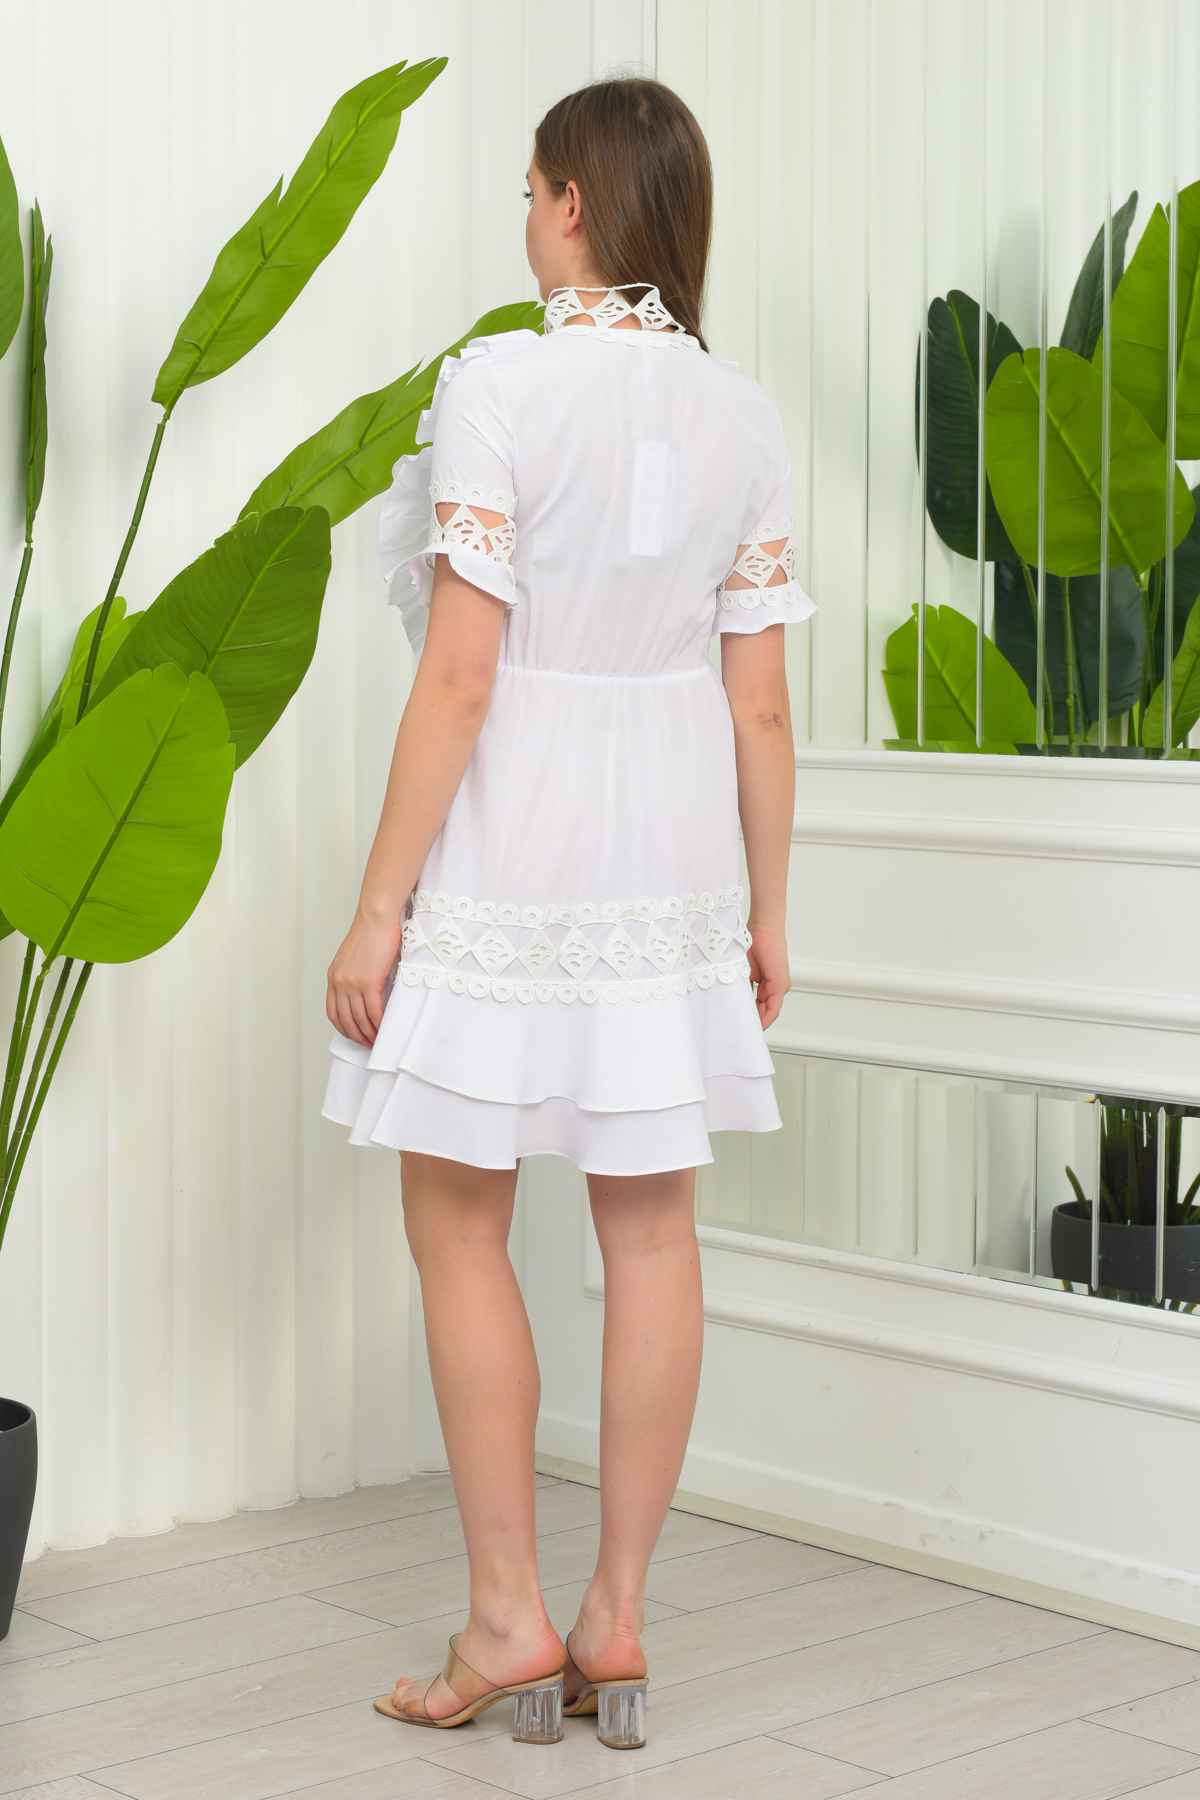 2128 - Terikoton Tasarım Dantel Aksesuarlı Gümlük Elbise